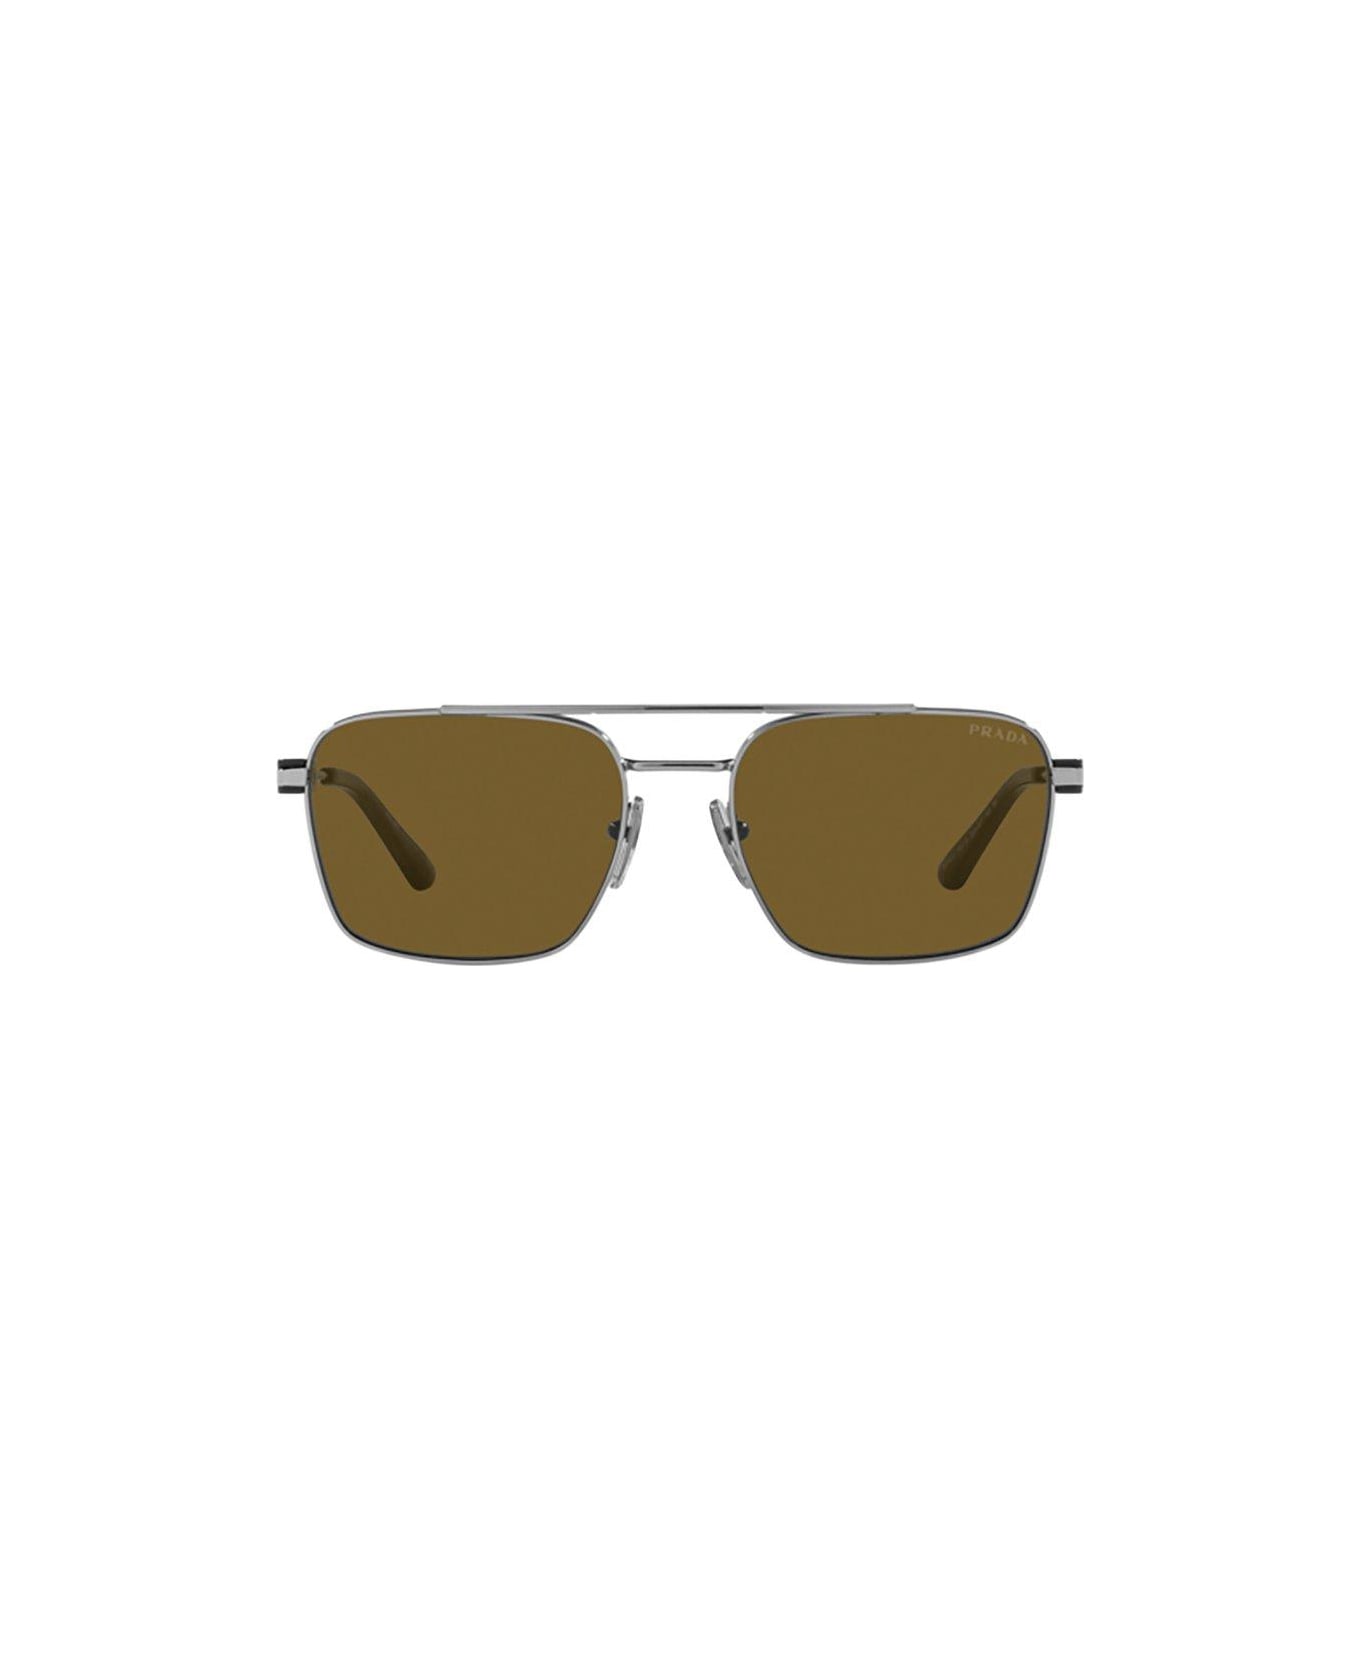 Prada Eyewear Square-frame Sunglasses Sunglasses - 5AV01T Gunmetal